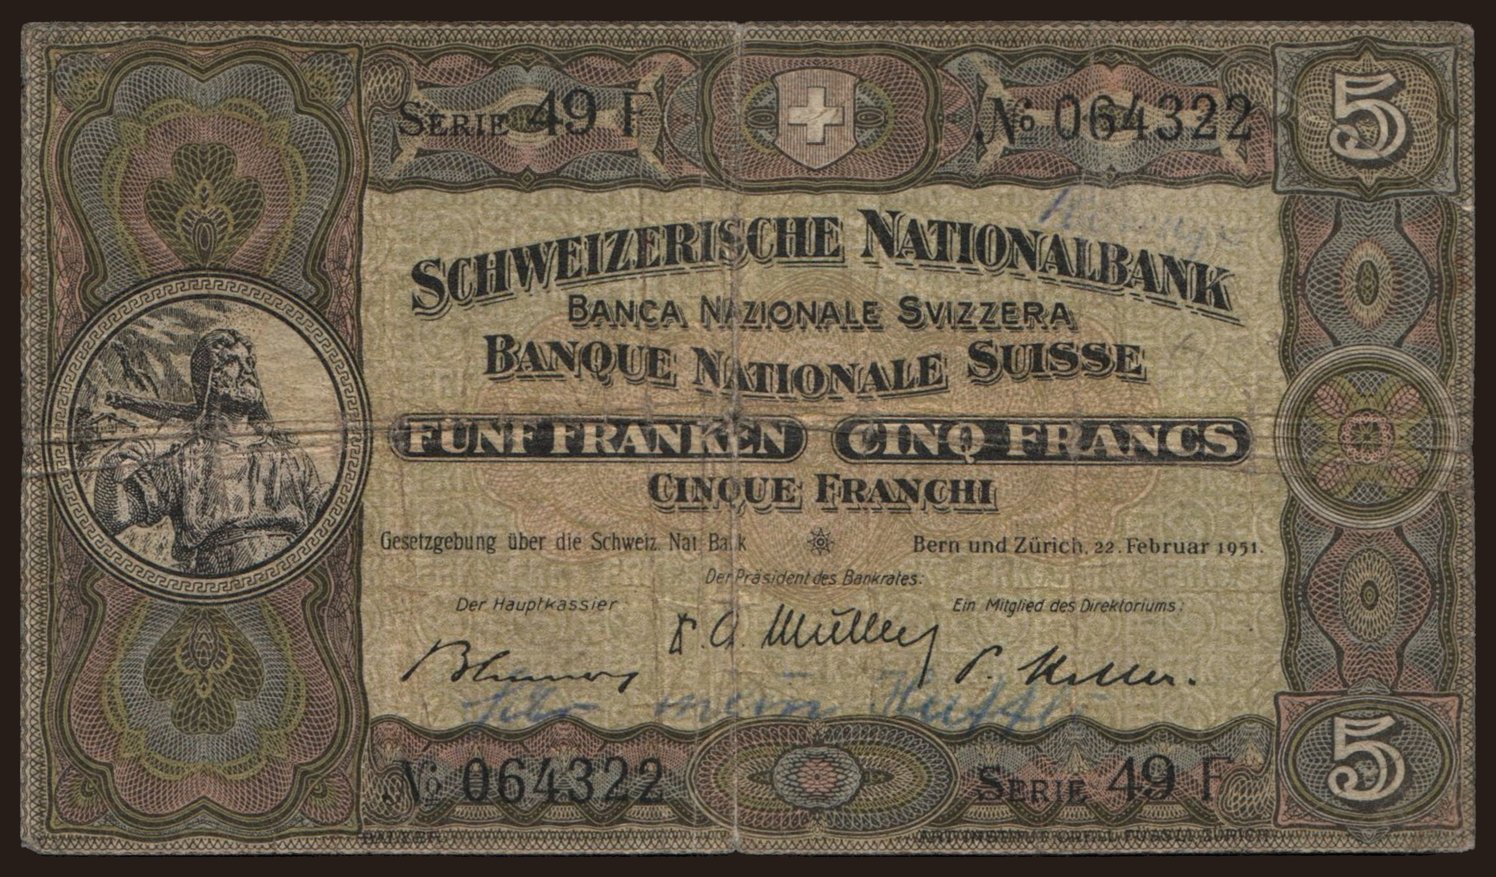 5 francs, 1951